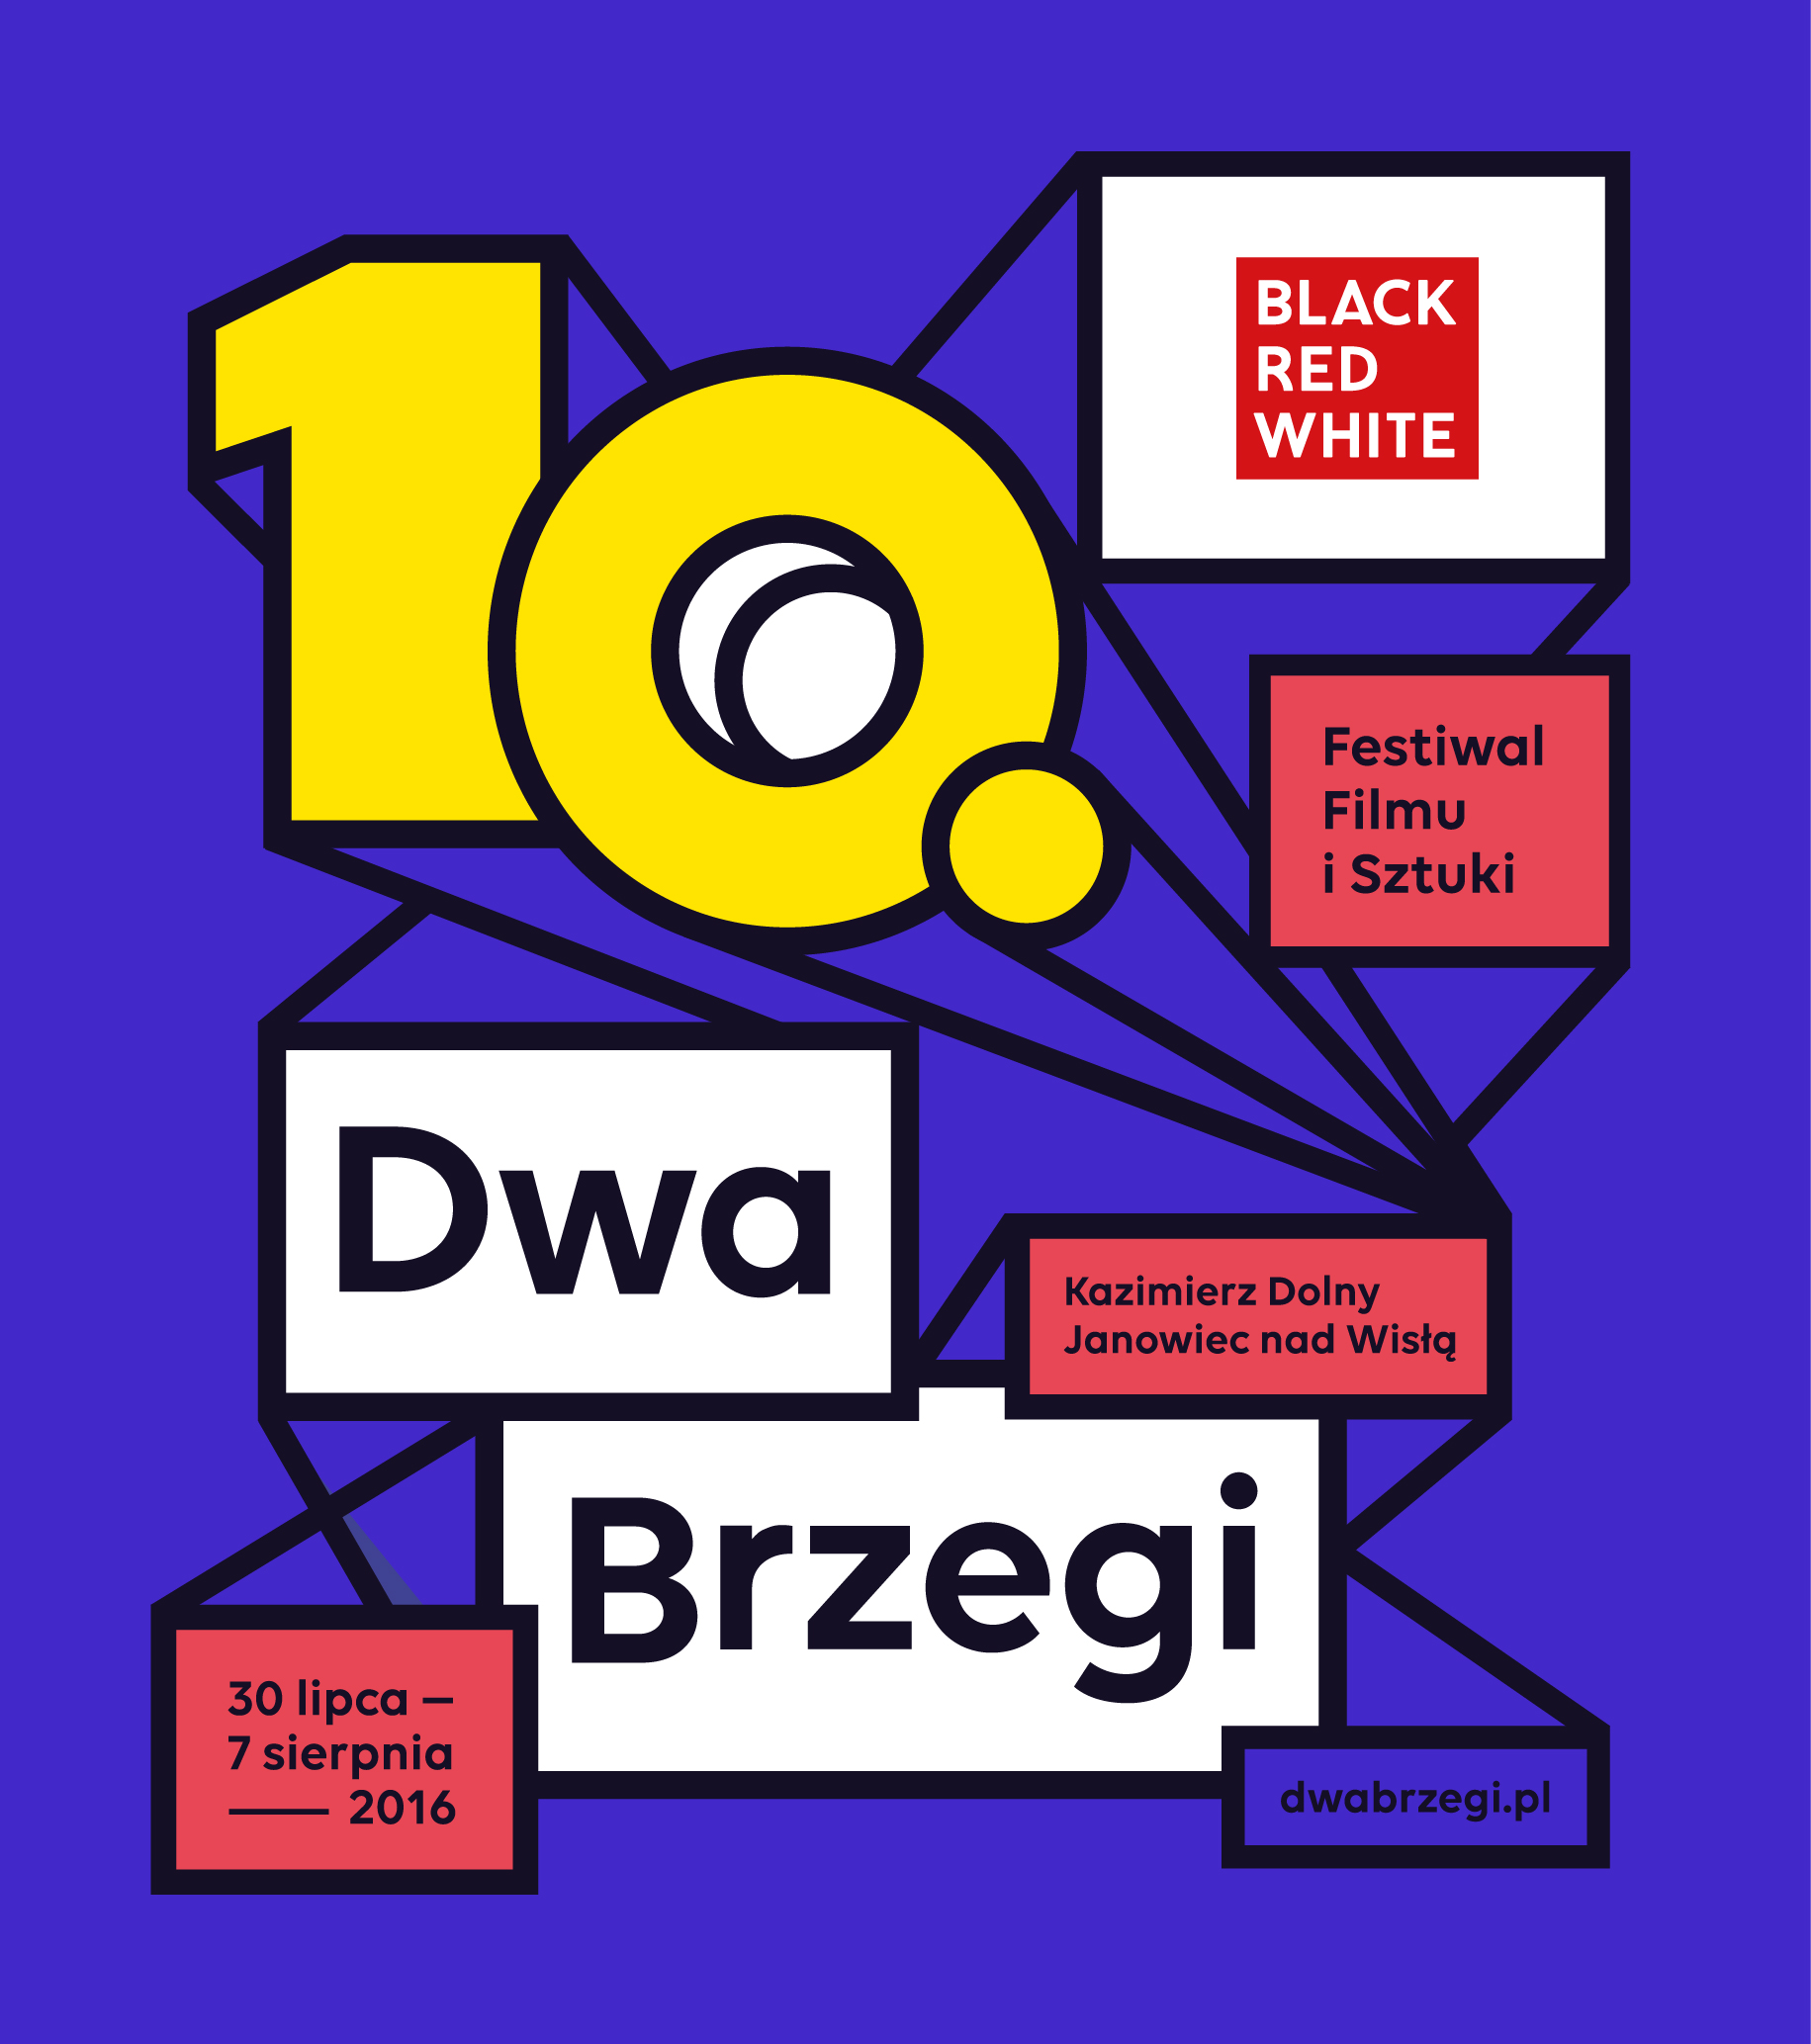 Tegoroczny Festiwal Filmu i Sztuki Dwa Brzegi ze strefą Black Red White Cafe